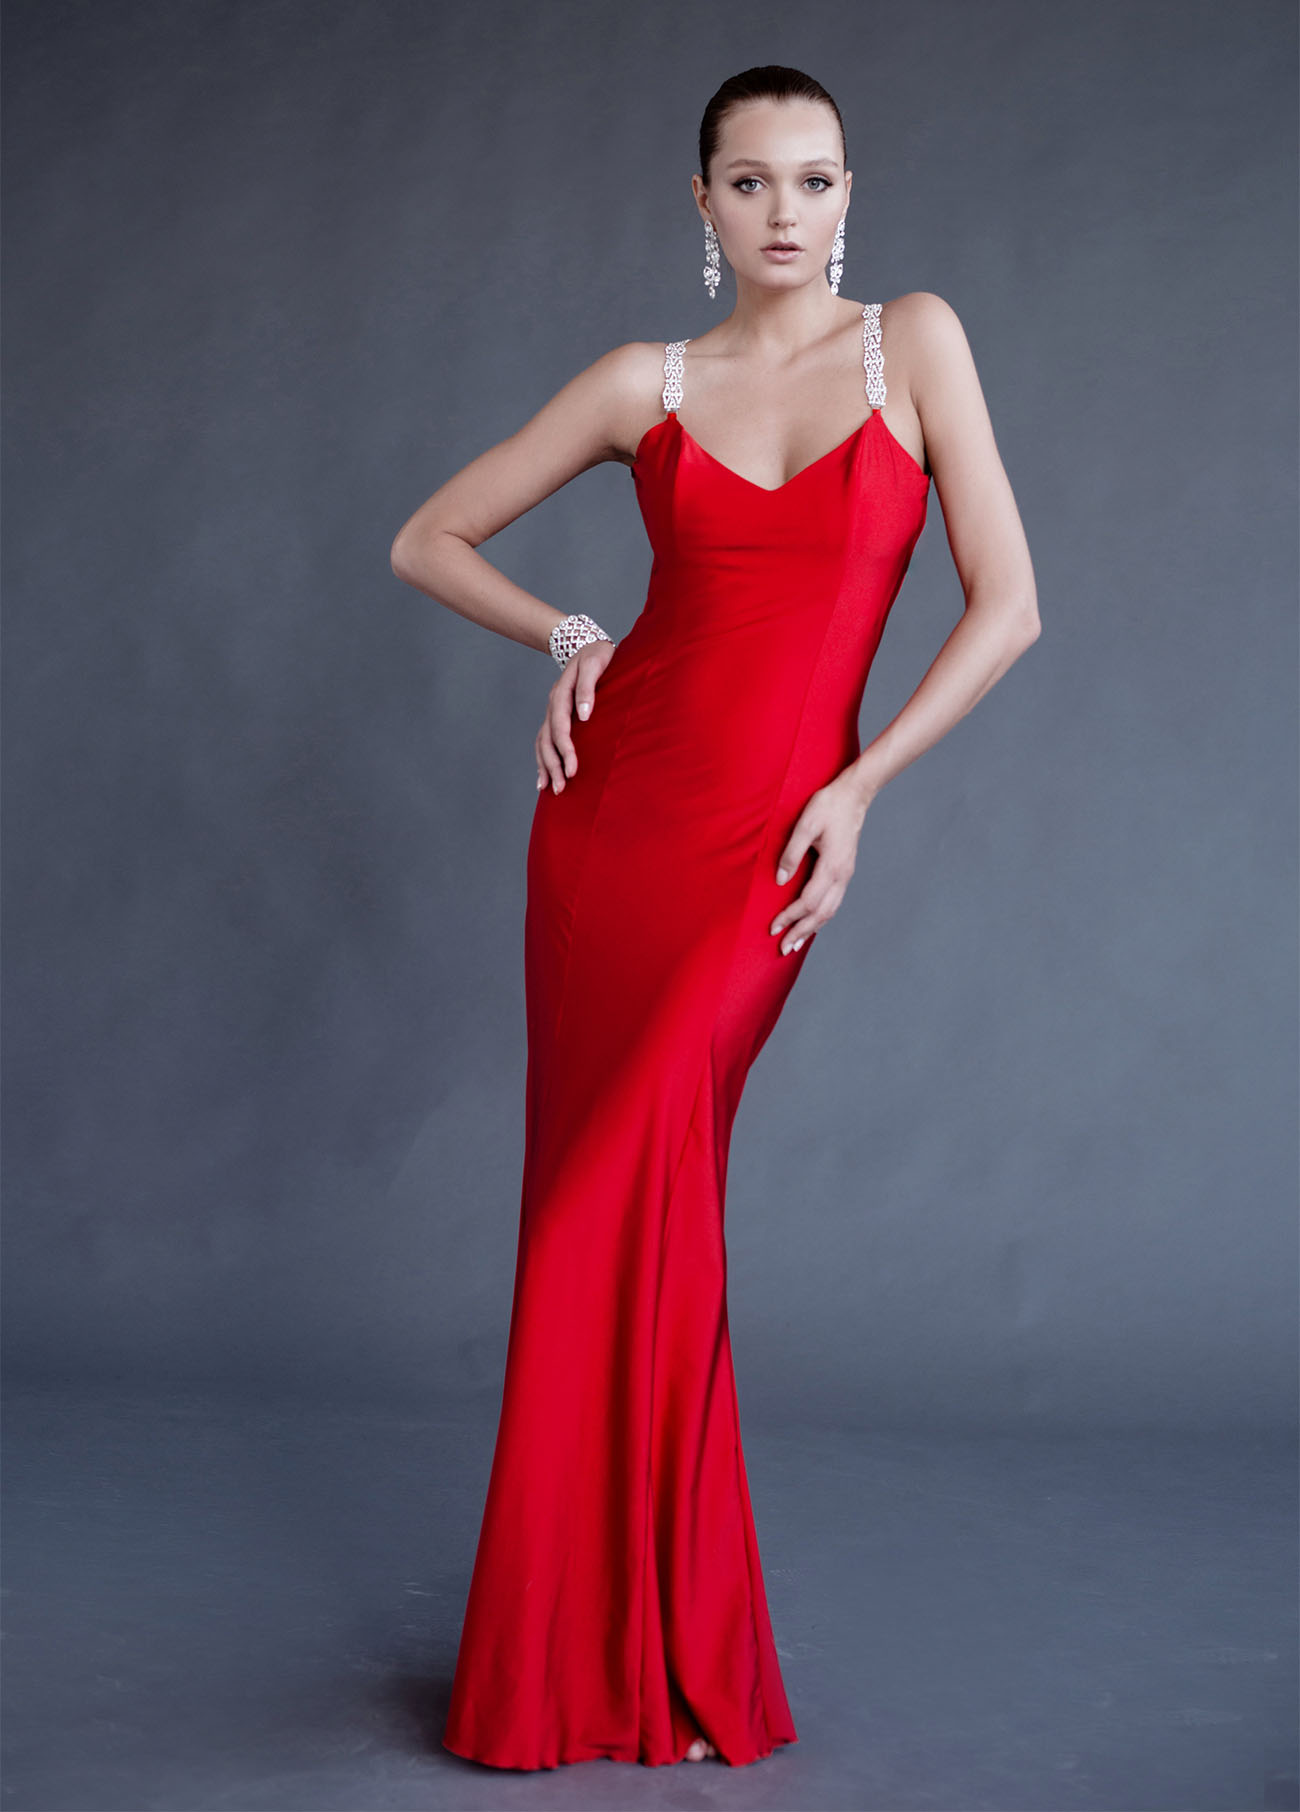 שמלת ערב מקסי אדומה תכשיט בגב